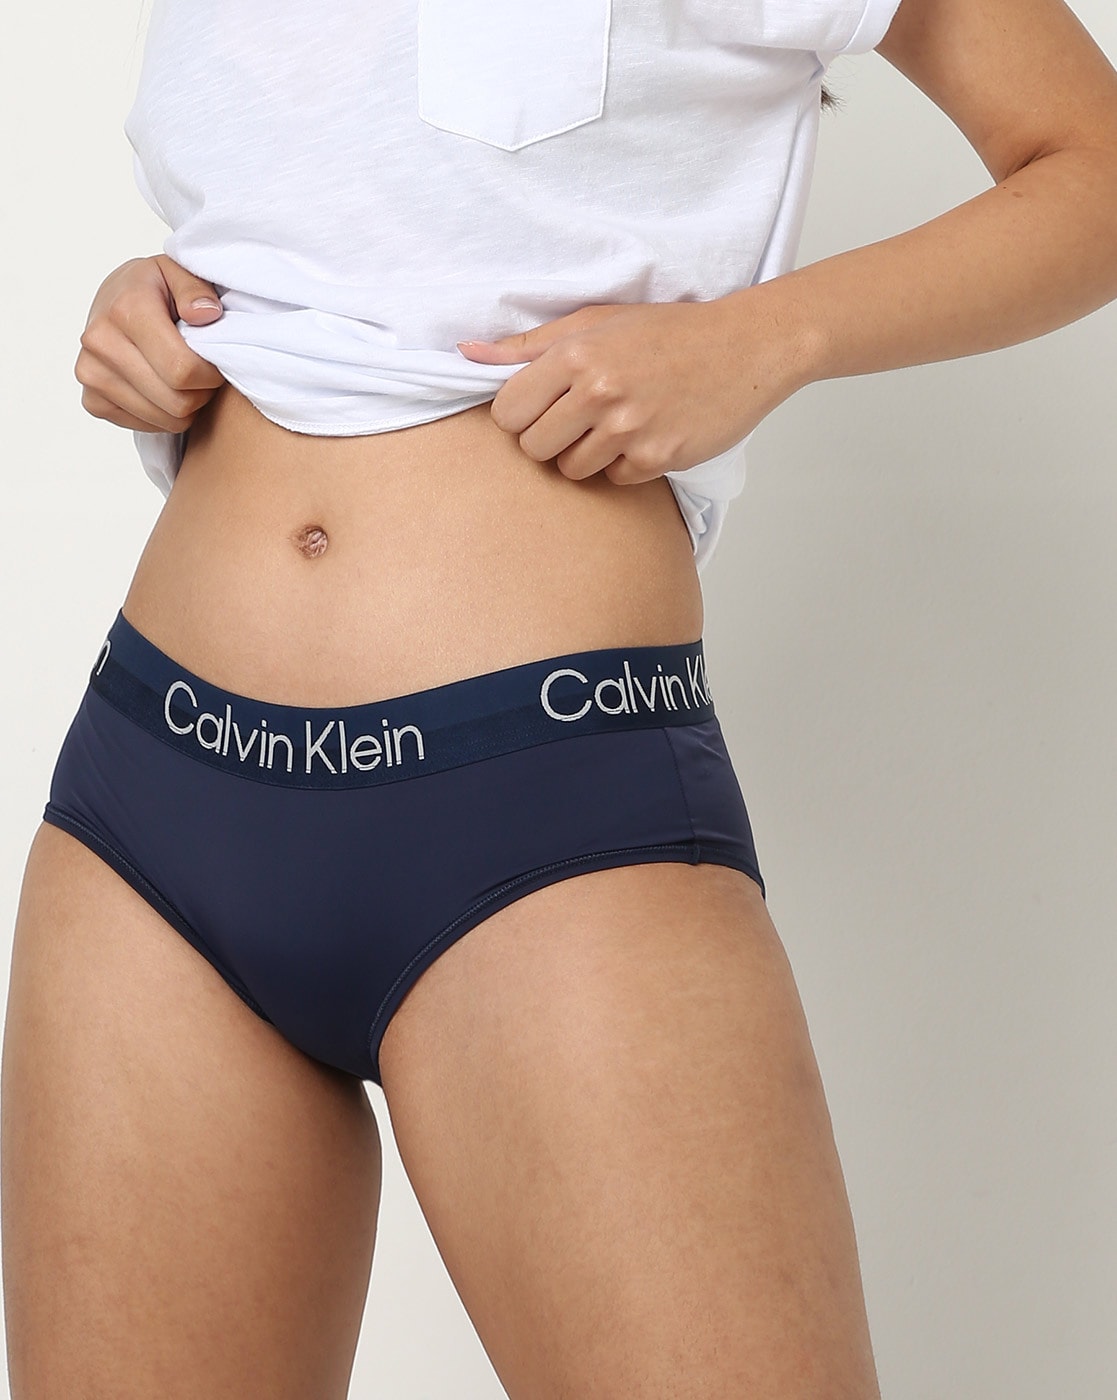 Women's underwear Calvin Klein Thong Navy